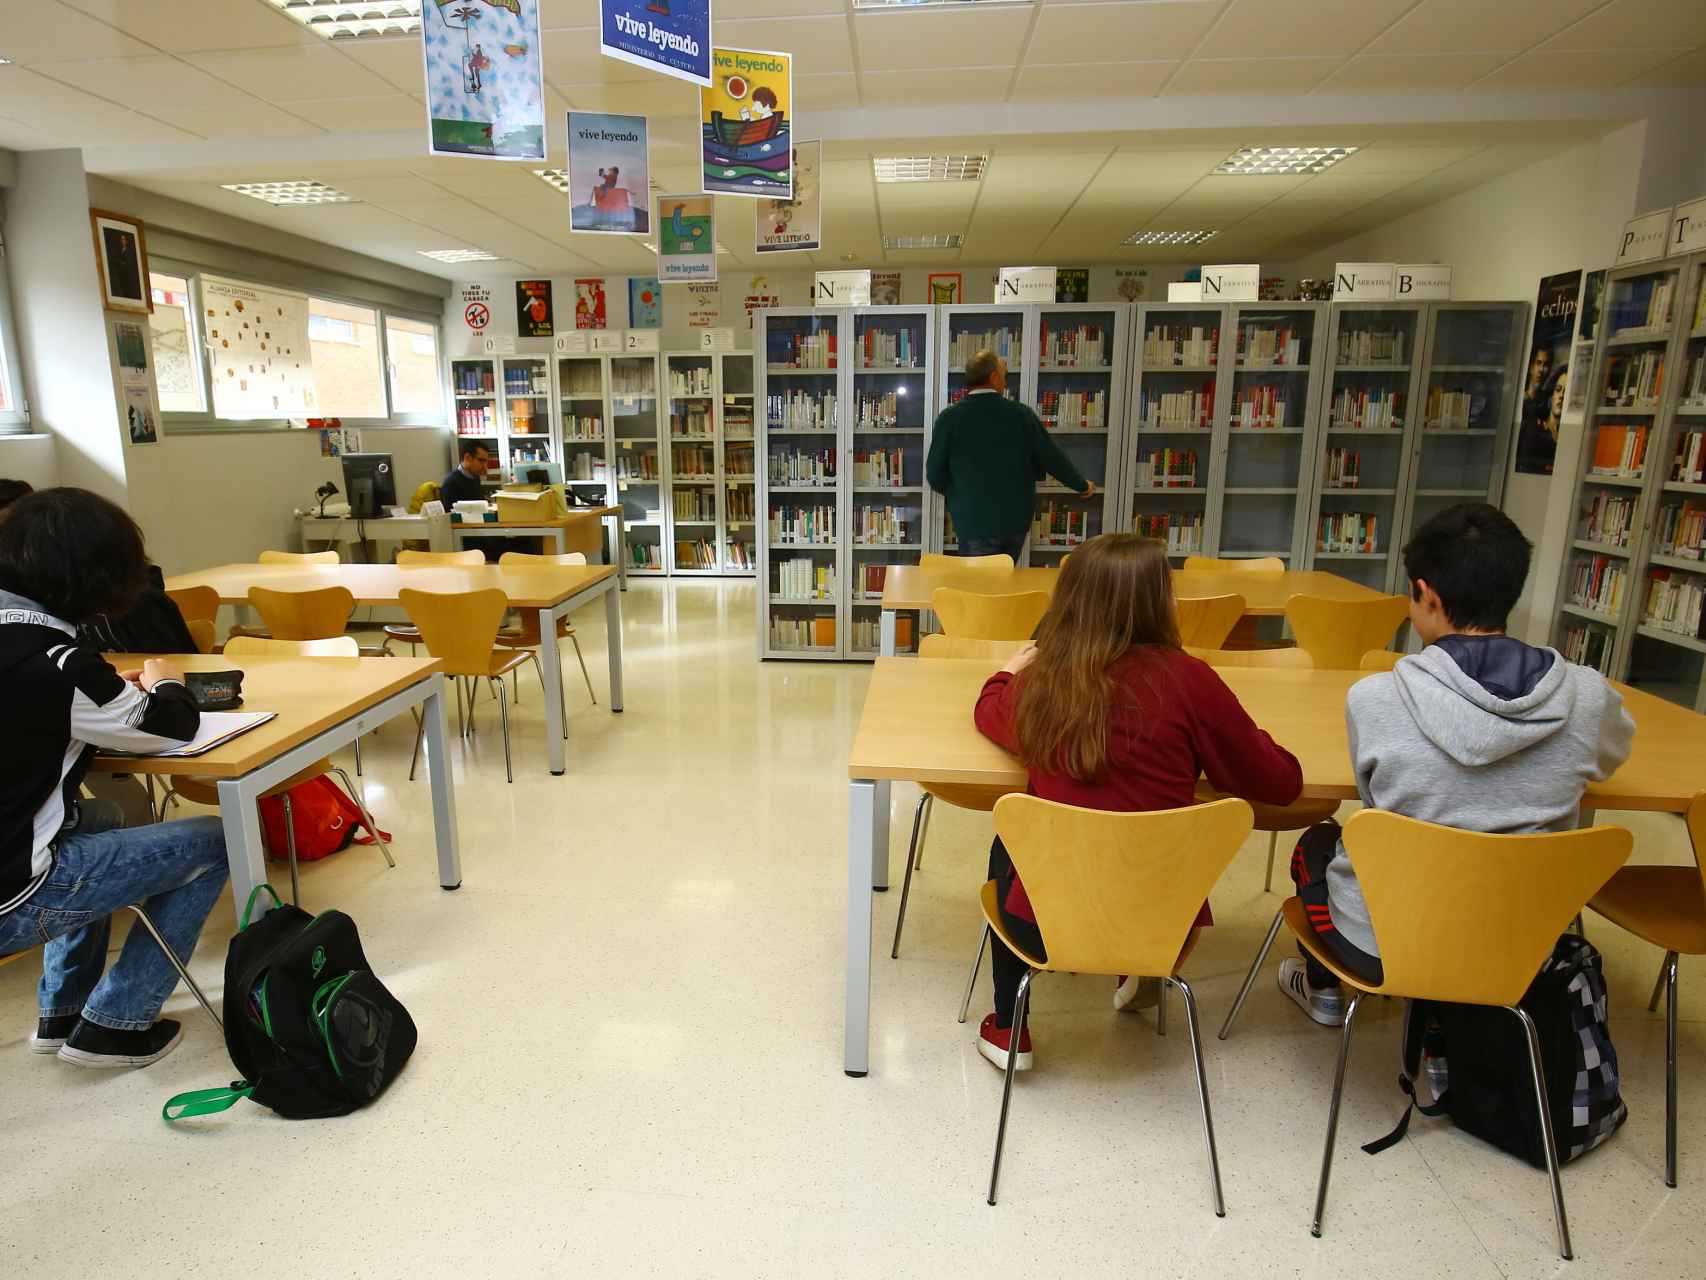 Imagen de una biblioteca de un centro escolar de Castilla y León.